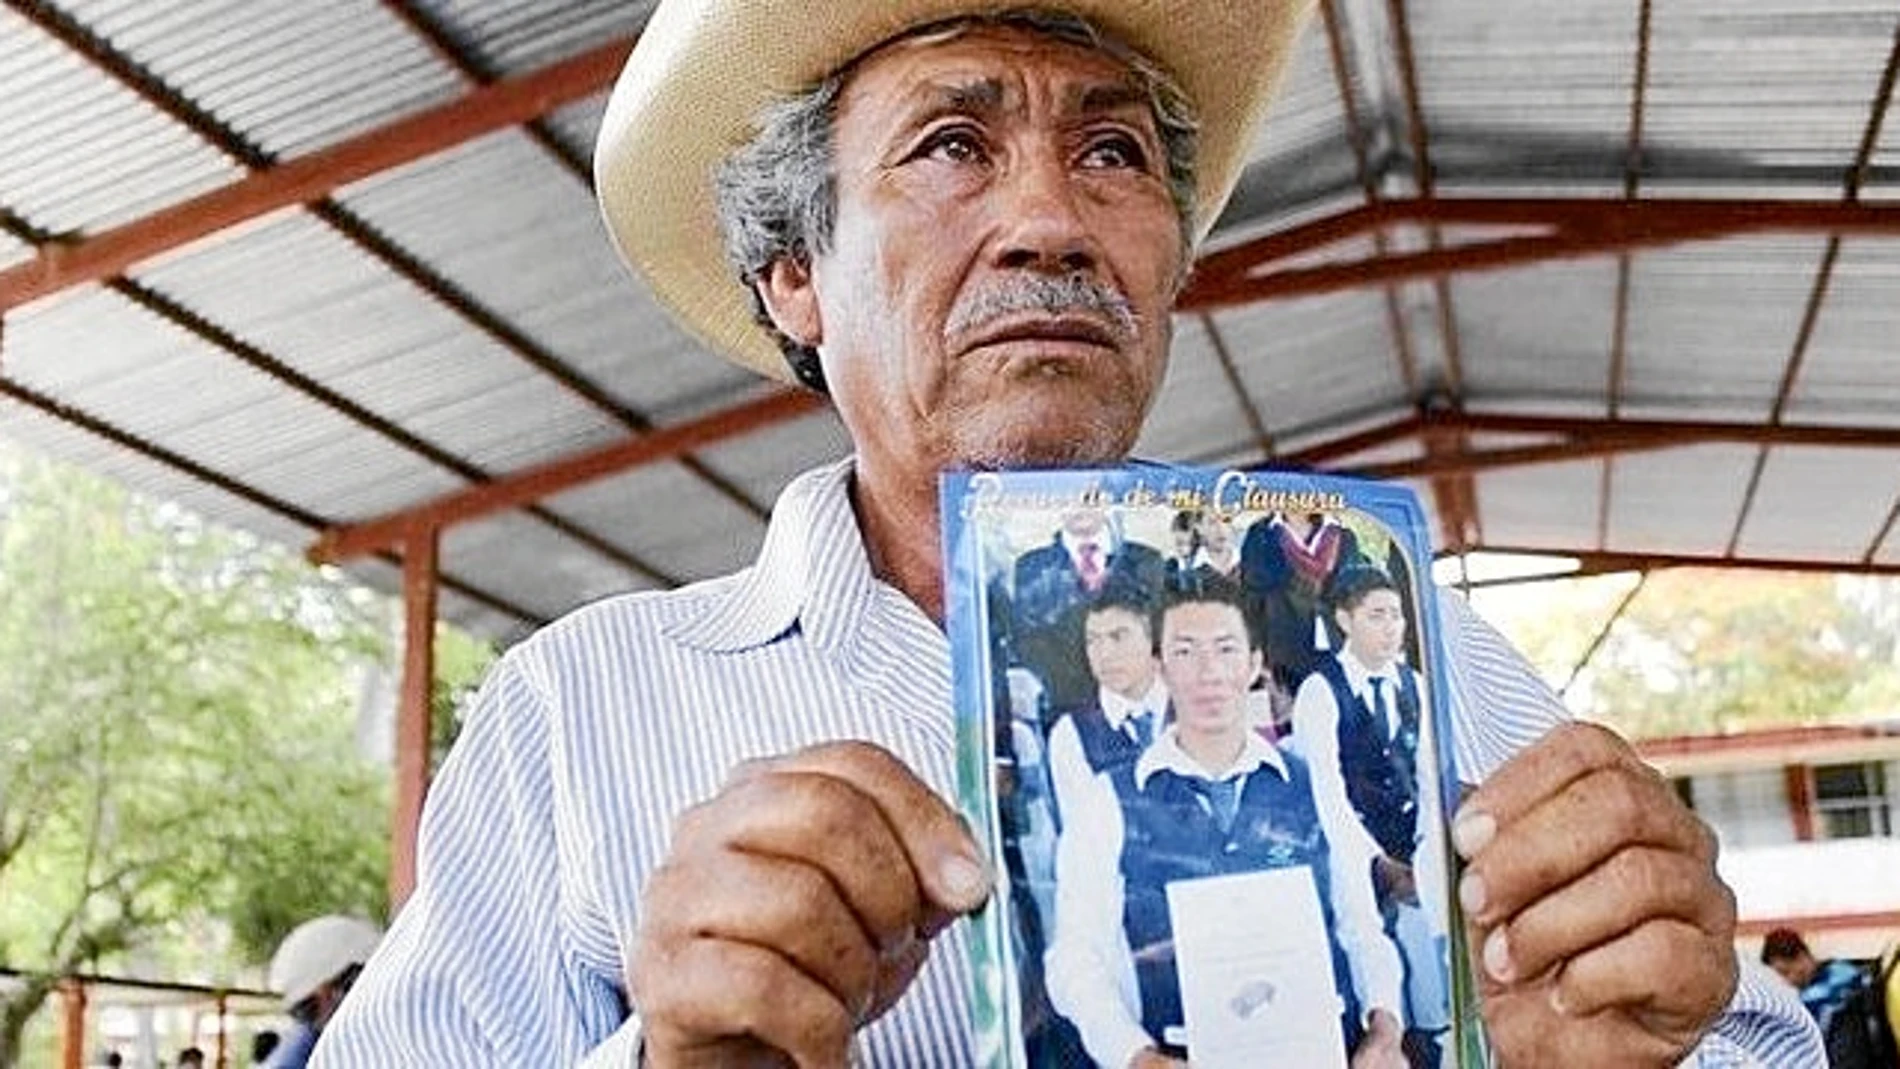 Campesino de profesión, muestra una foto de su hijo, uno de los 43 estudiantes secuestrados. «Creo que Jhosivani está vivo», sostiene sin perder la esperanza.